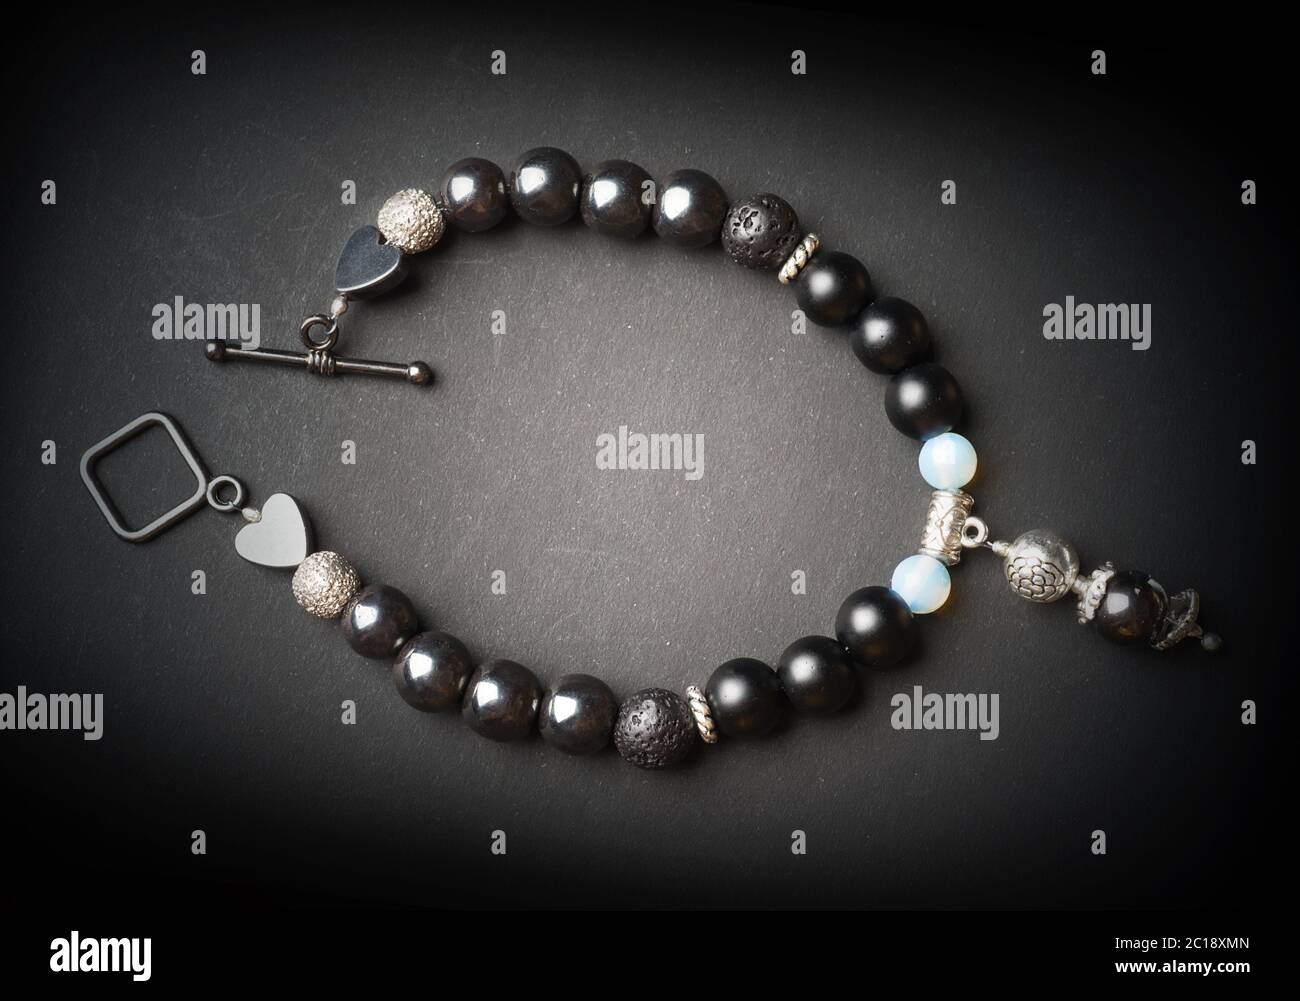 bracelet bijou avec pierres semi-précieuses sur fond noir Banque D'Images